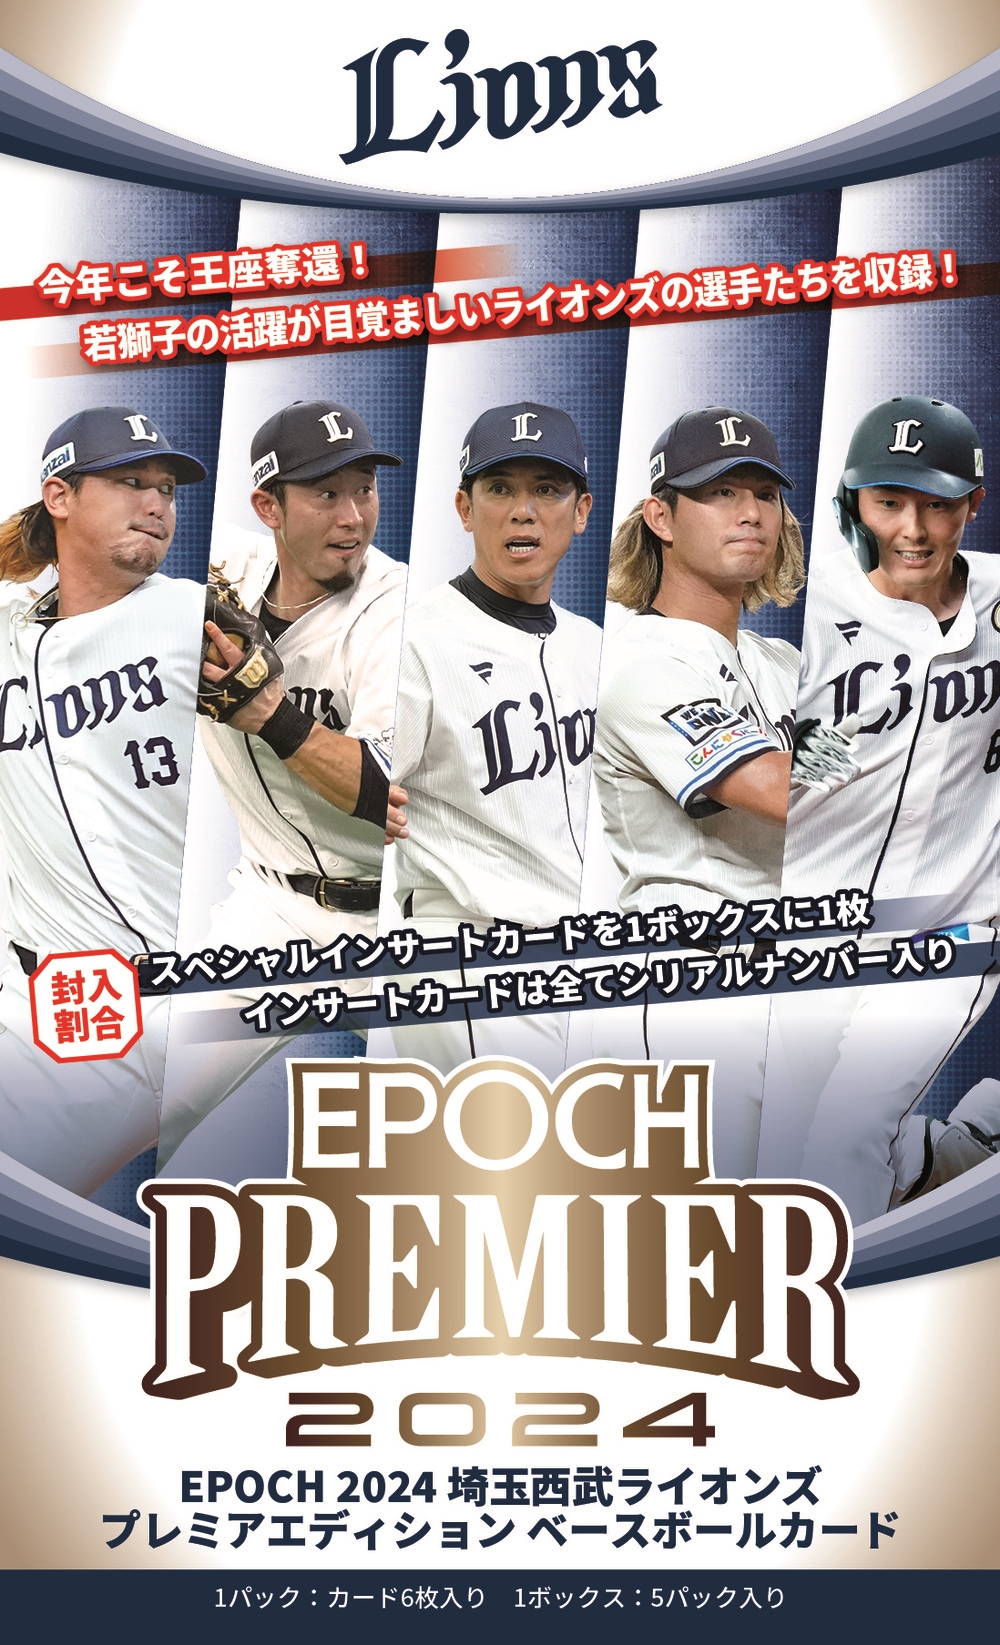 ⚾ EPOCH 2024 埼玉西武ライオンズ PREMIER EDITION ベースボール 